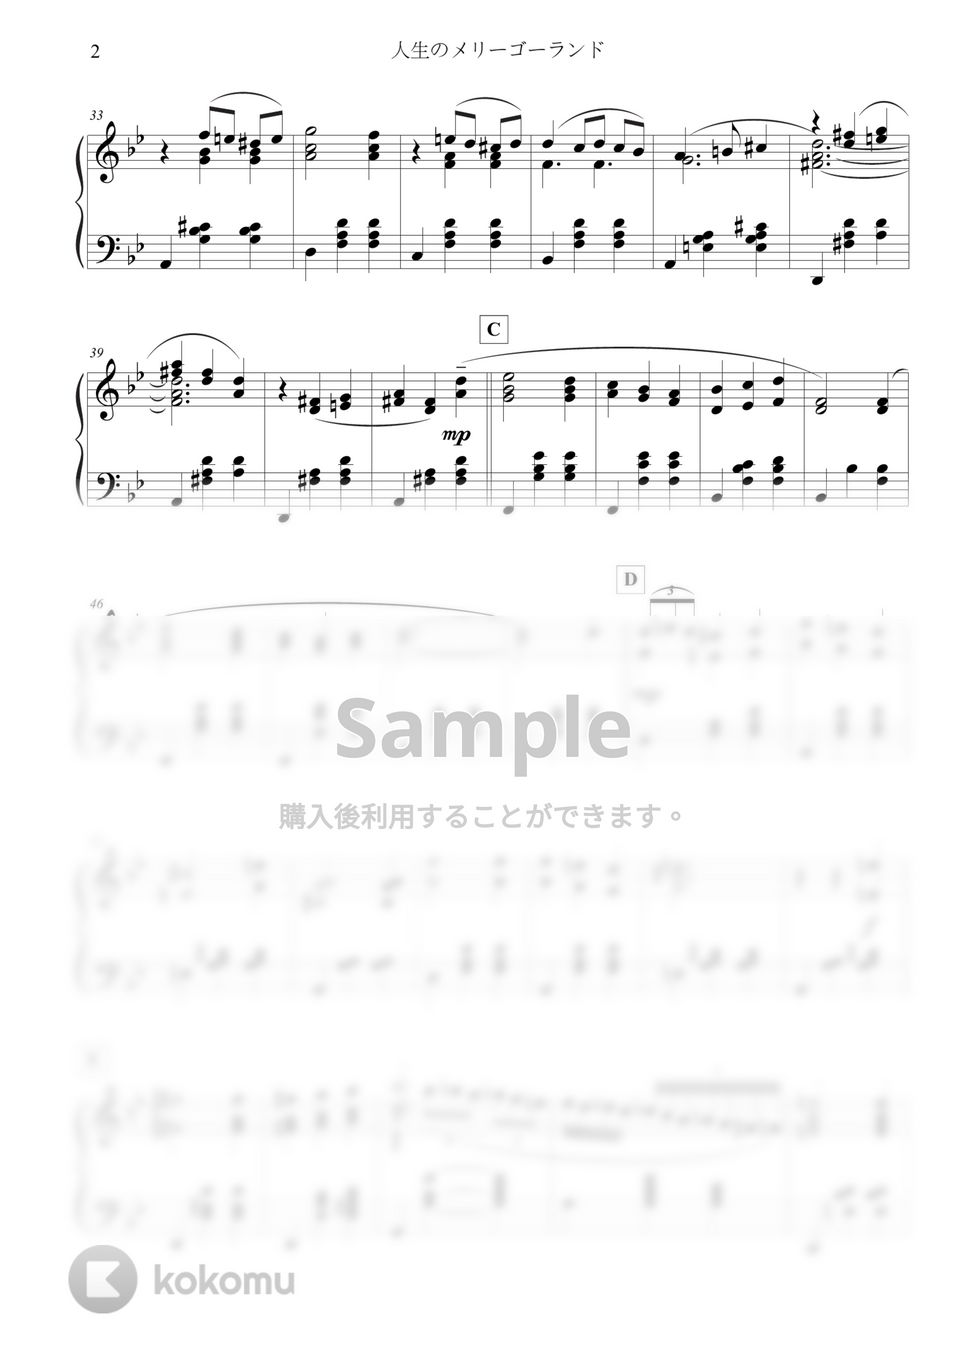 久石譲 - 人生のメリーゴーランド -Piano Solo Ver.- (原典版) by 楊思緯